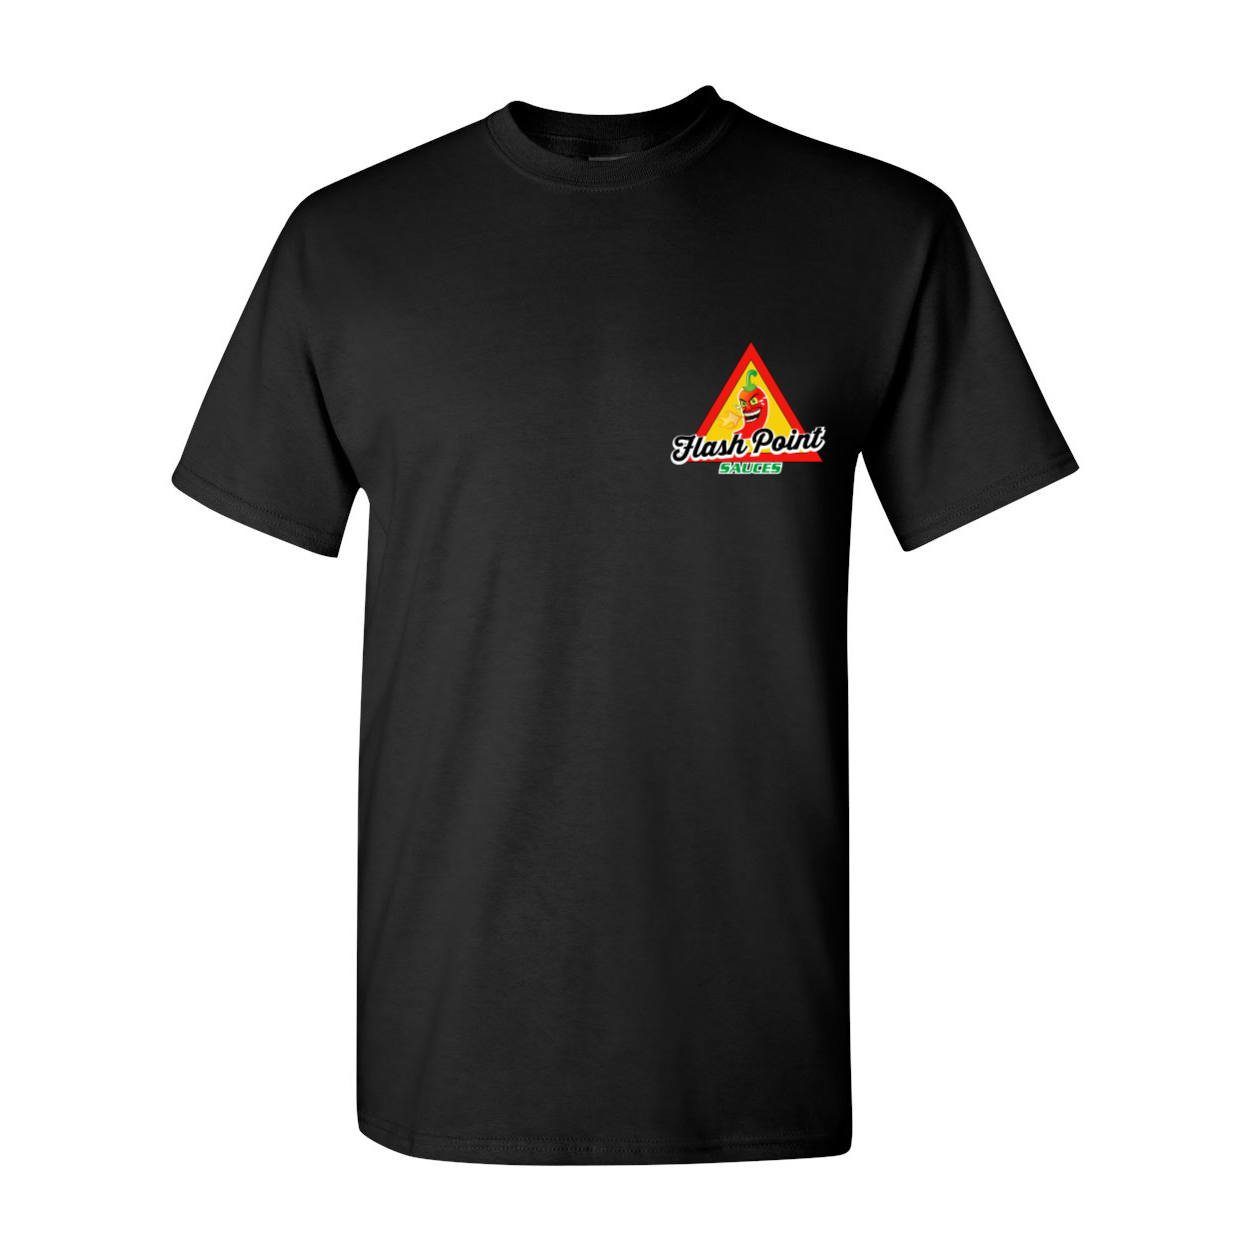 Fire Up Your Tastebudz Short Sleeve T-Shirt